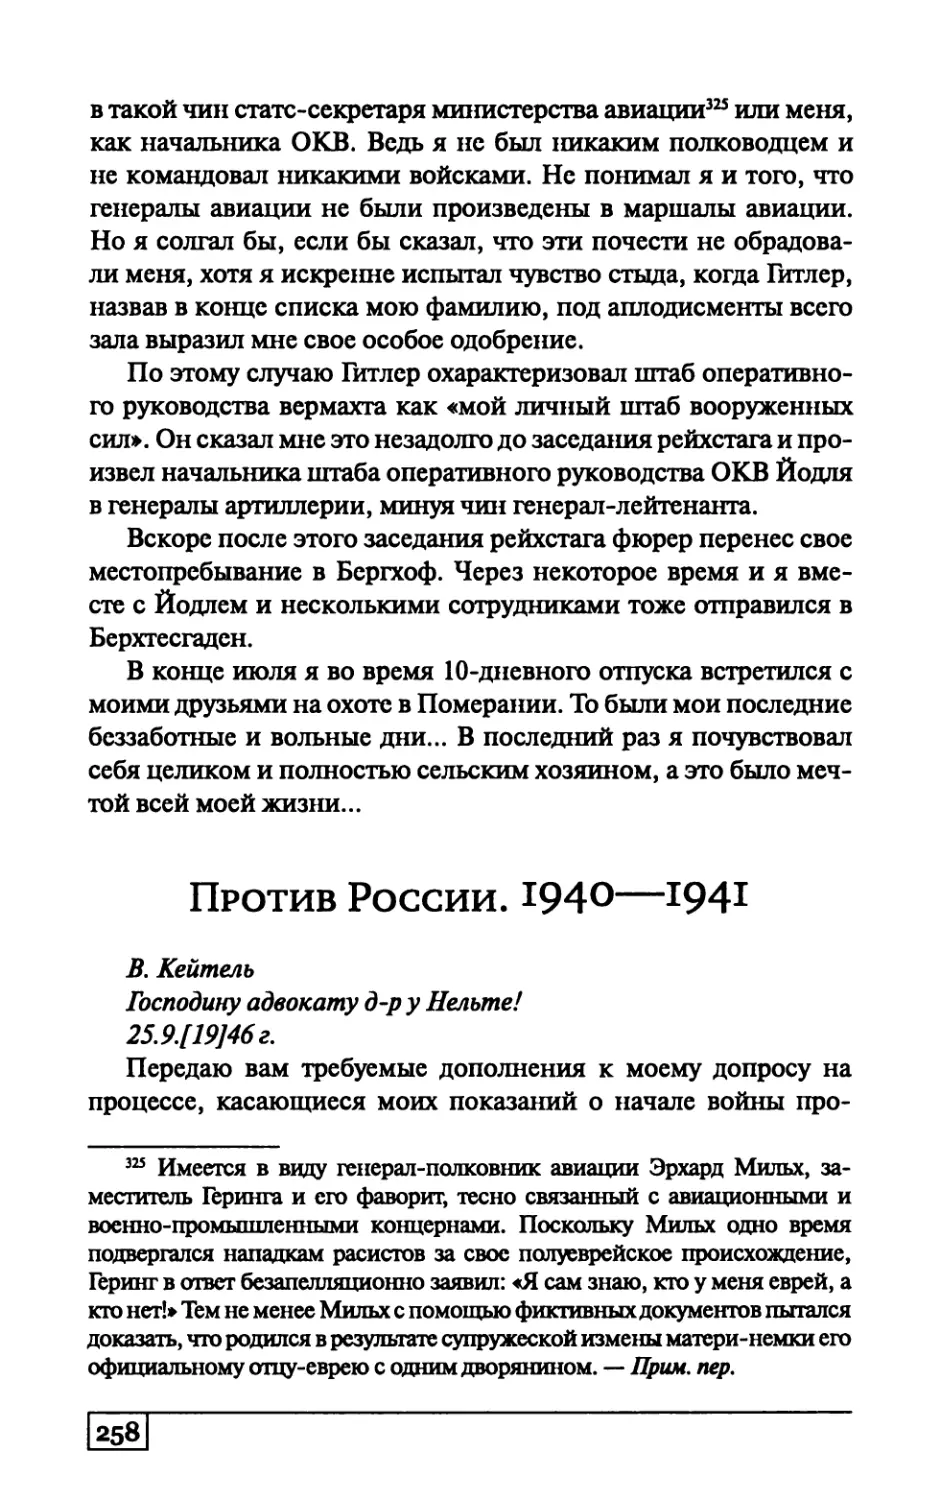 Против России. 1940—1941